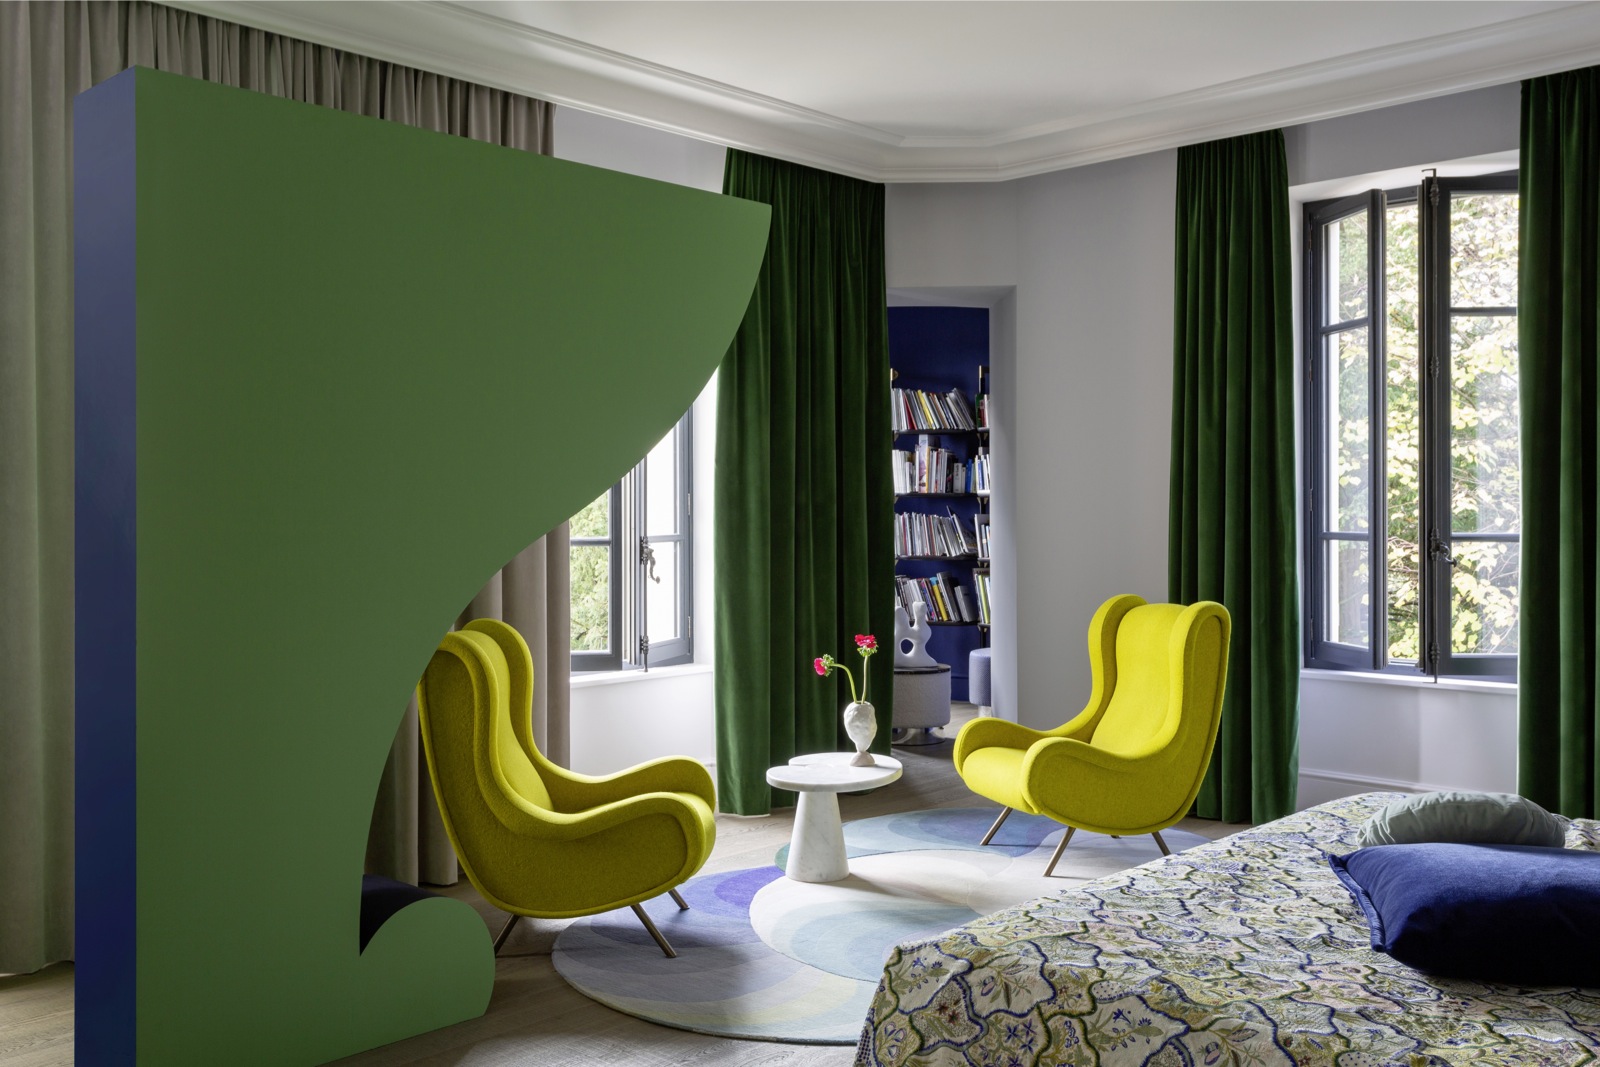 Зеленый цвет в интерьере: сочетания, зеленый на стенах и в мебели, 50 реальных фото